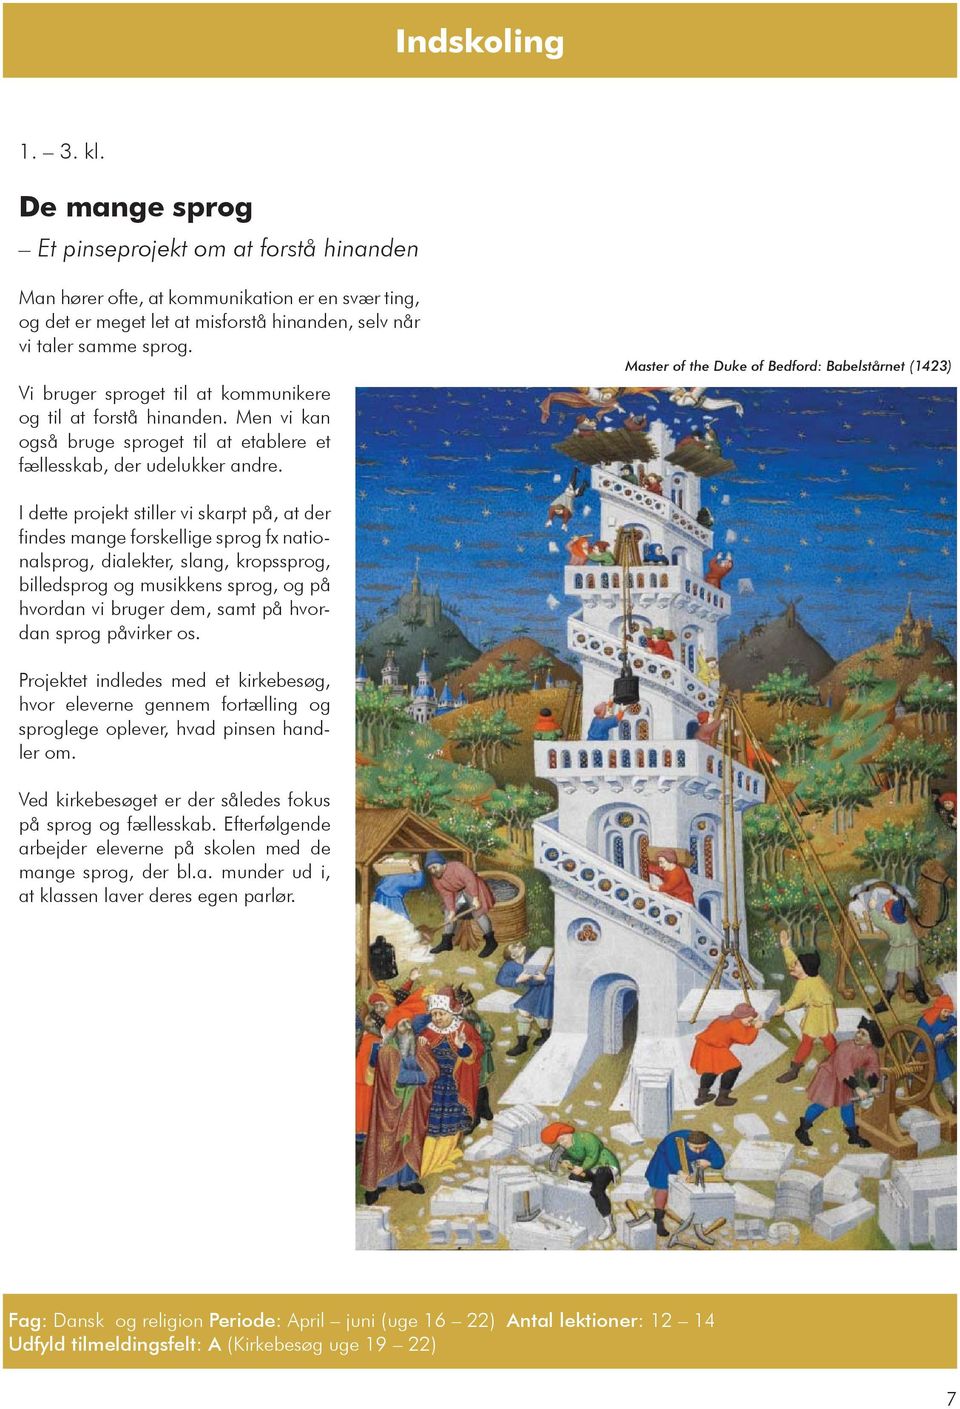 Master of the Duke of Bedford: Babelstårnet (1423) I dette projekt stiller vi skarpt på, at der findes mange forskellige sprog fx nationalsprog, dialekter, slang, kropssprog, billedsprog og musikkens